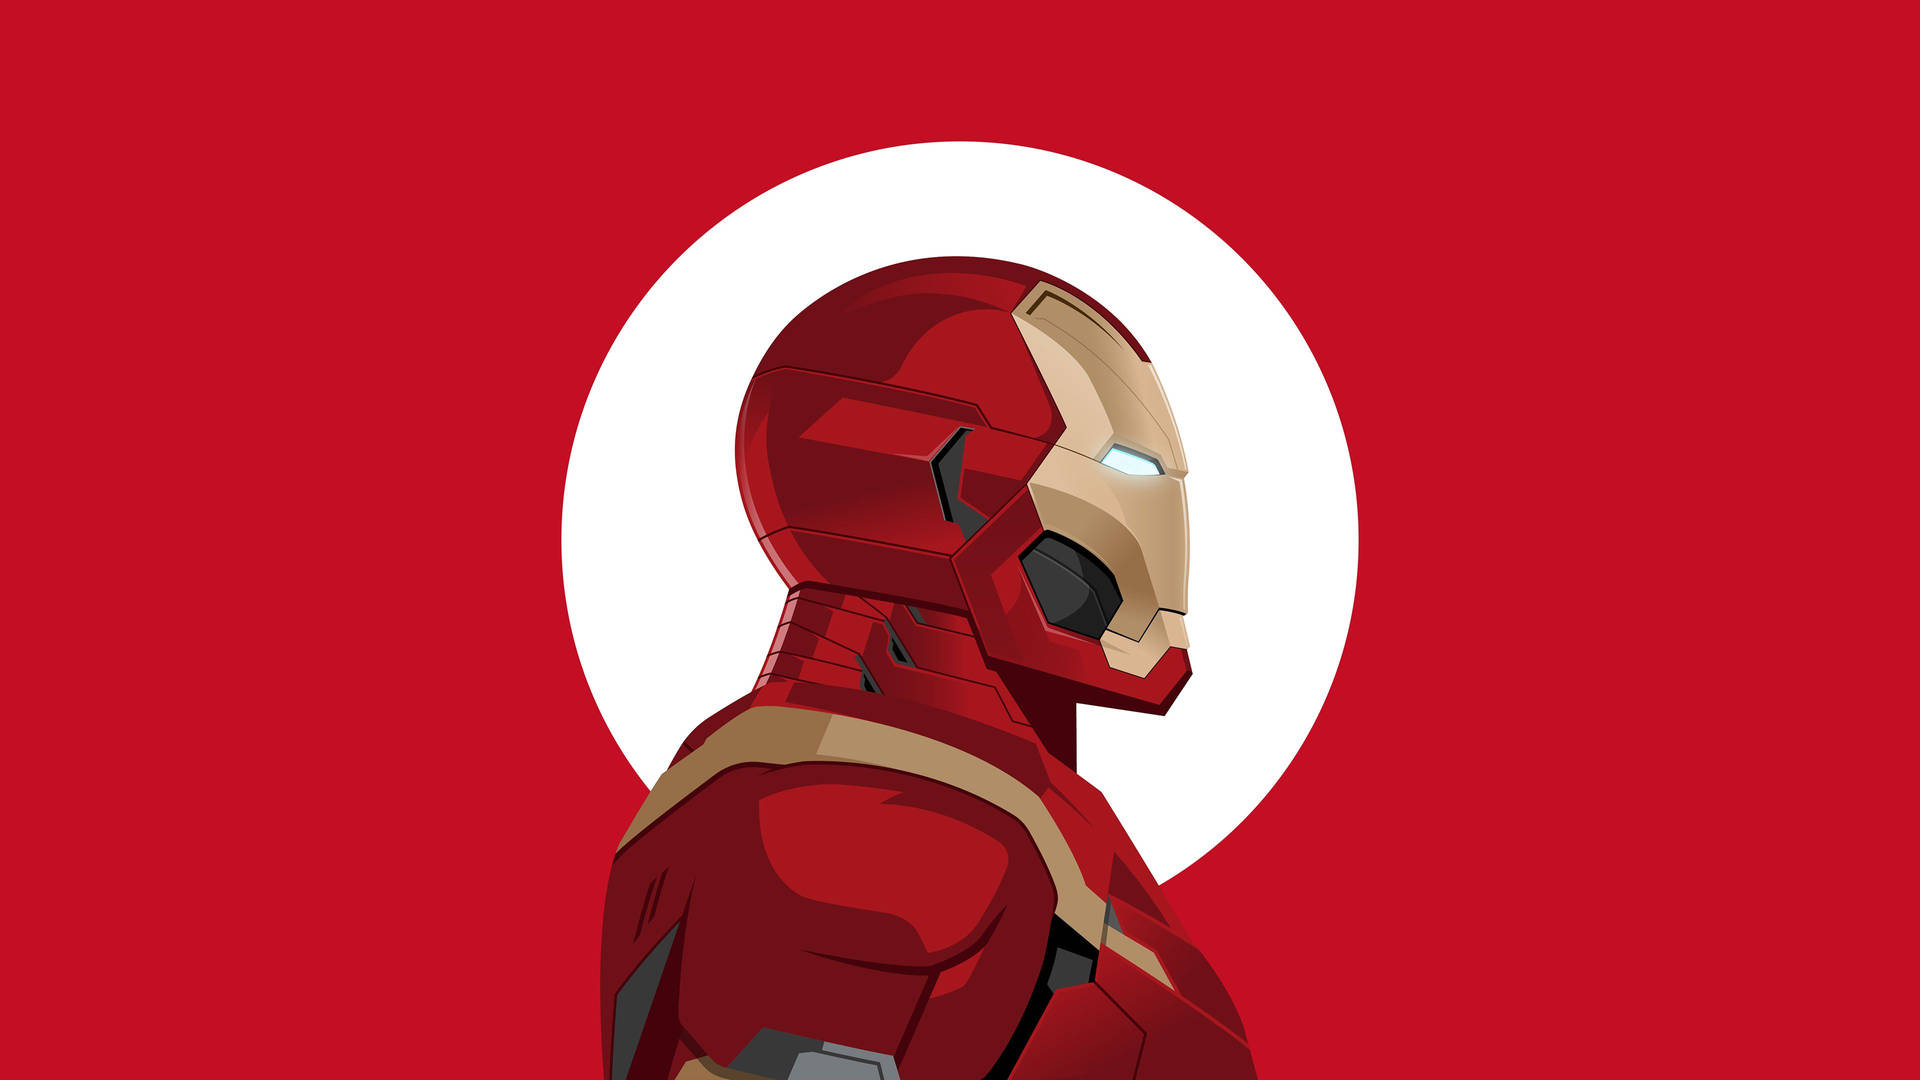 Free Iron Man 4k Wallpaper Downloads, [100+] Iron Man 4k Wallpapers for  FREE 